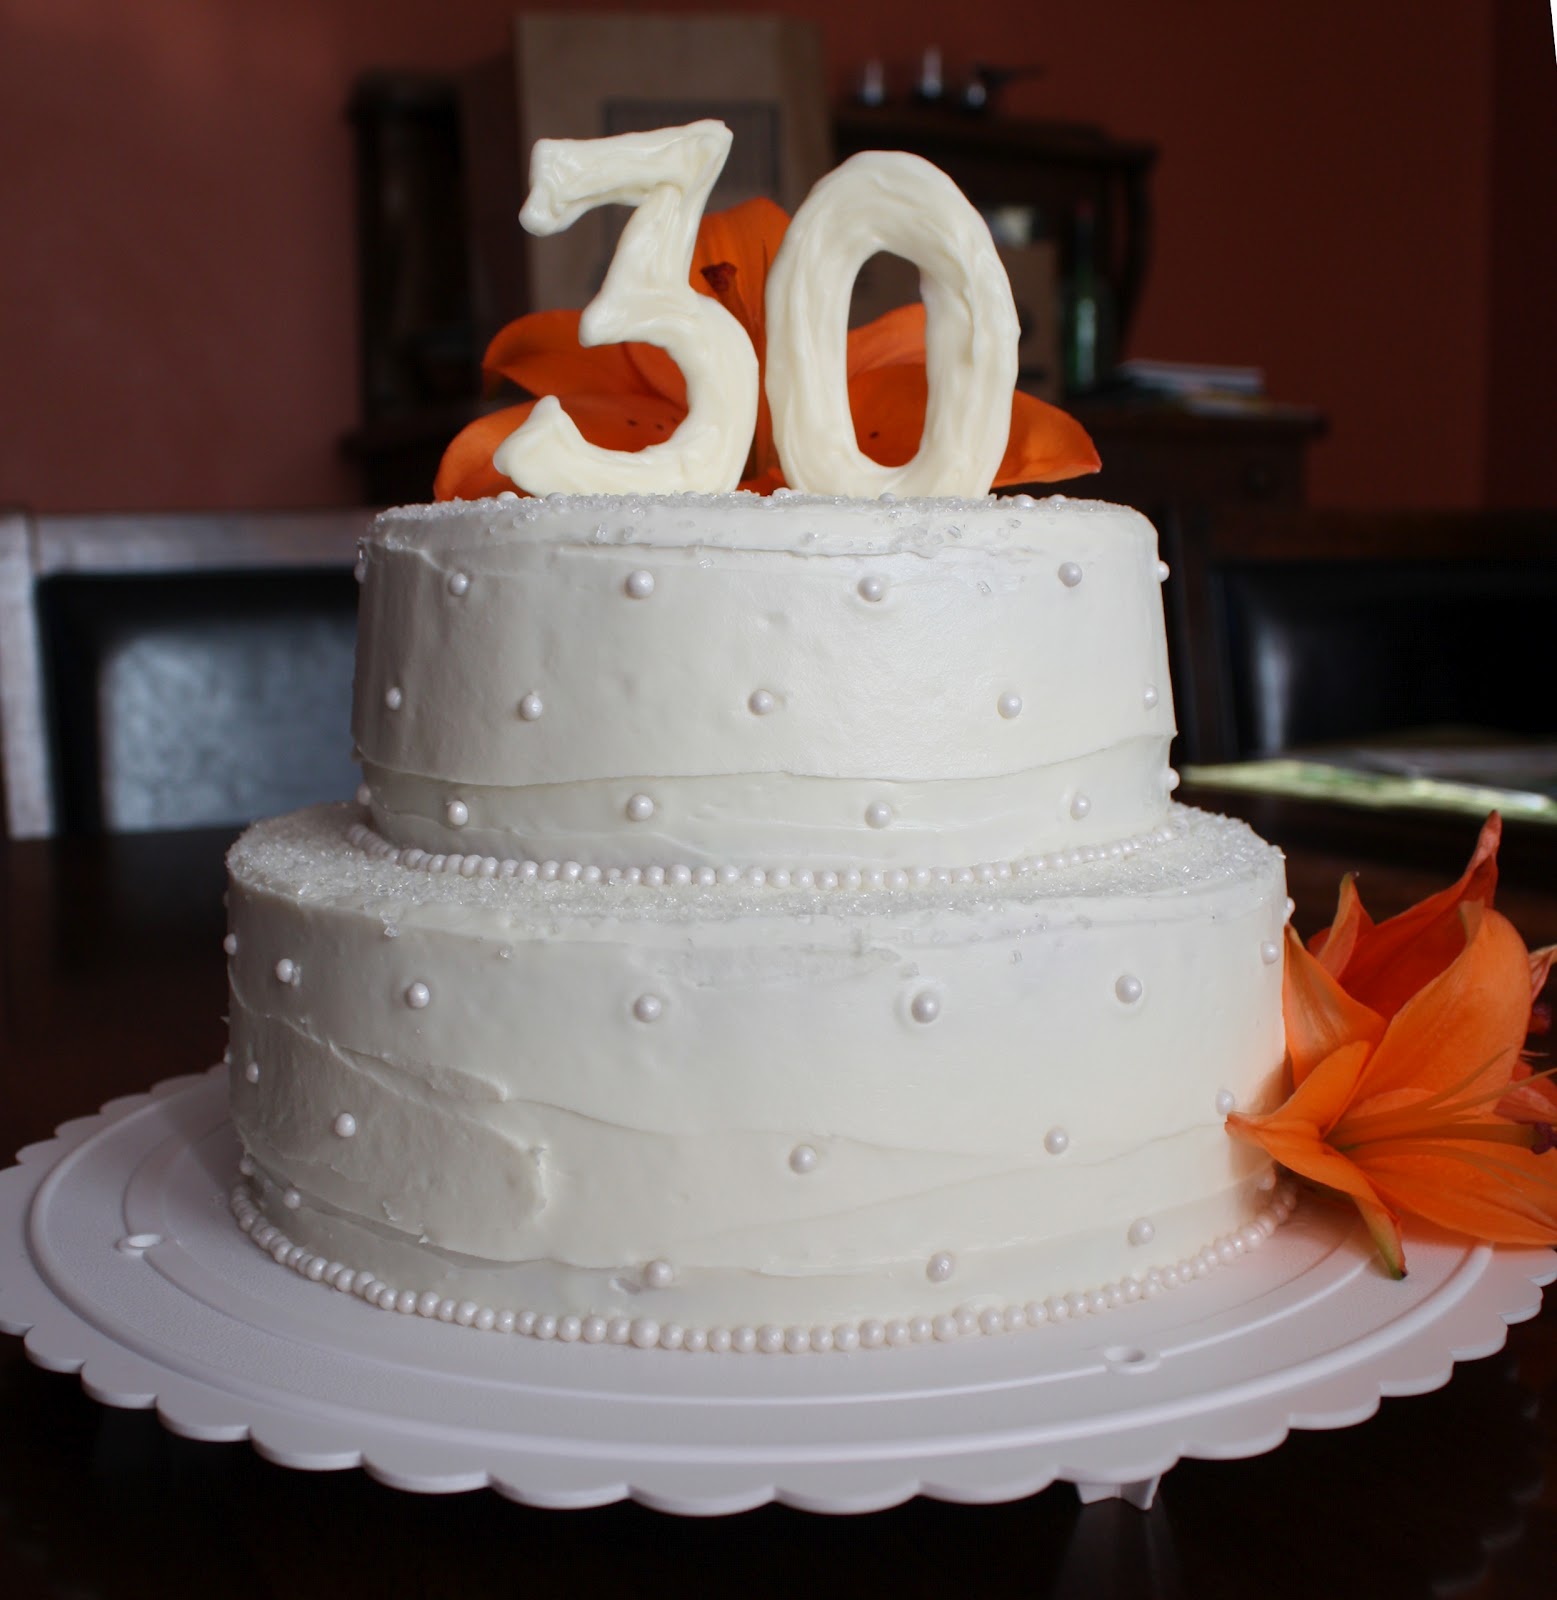 30th Anniversary Cake